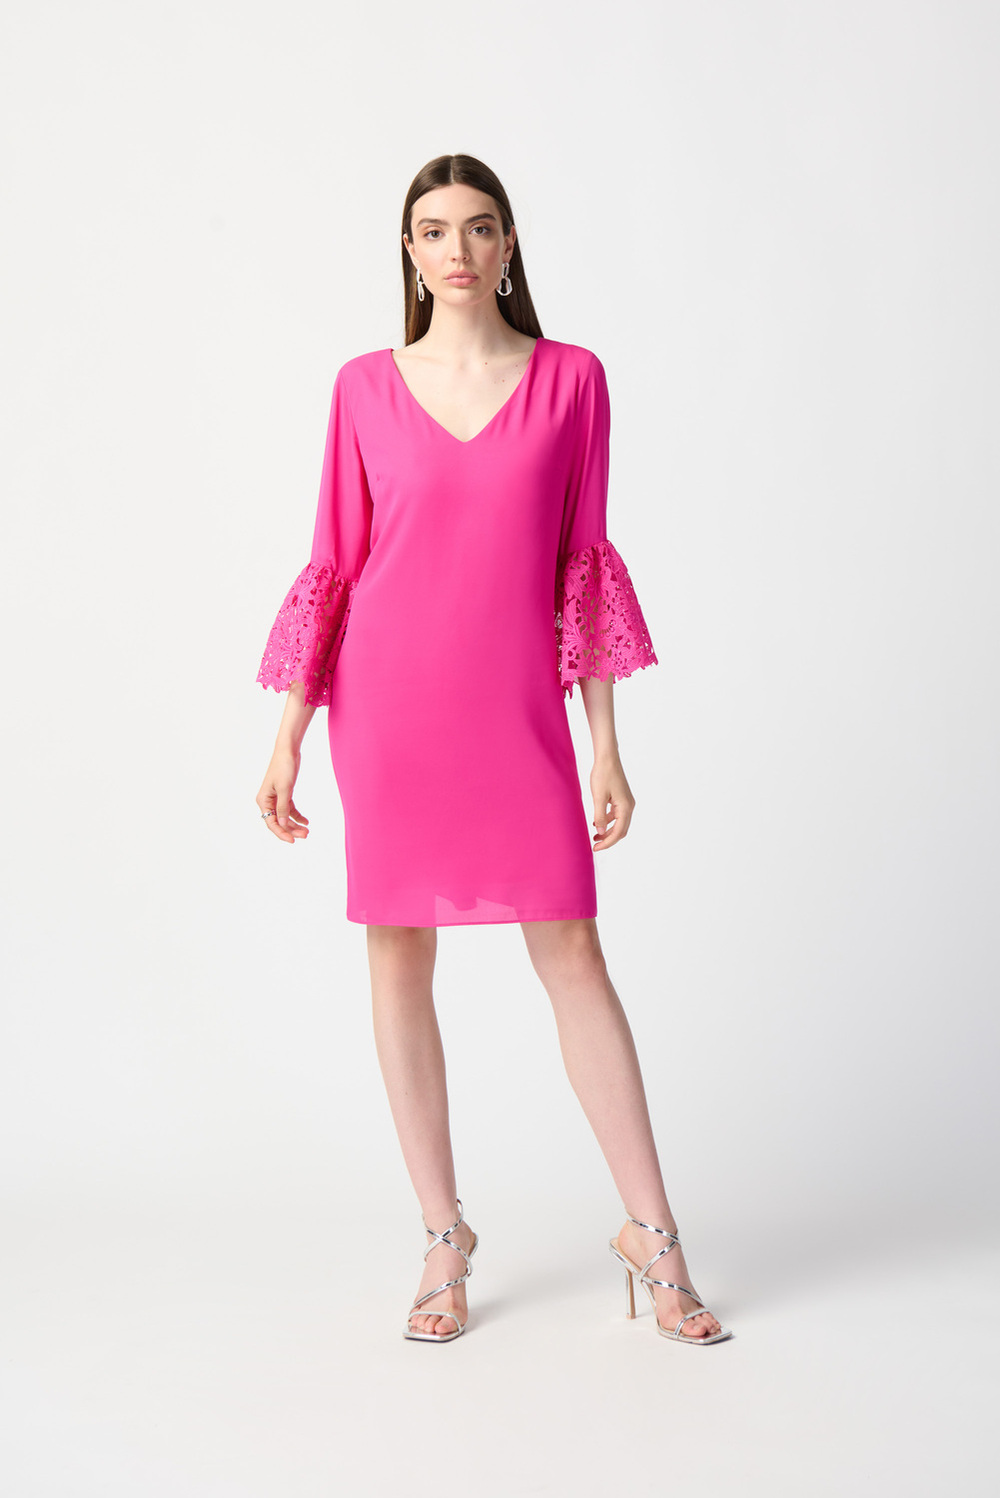 Ruffle & Lace Dress Style 241252. Ultra Pink